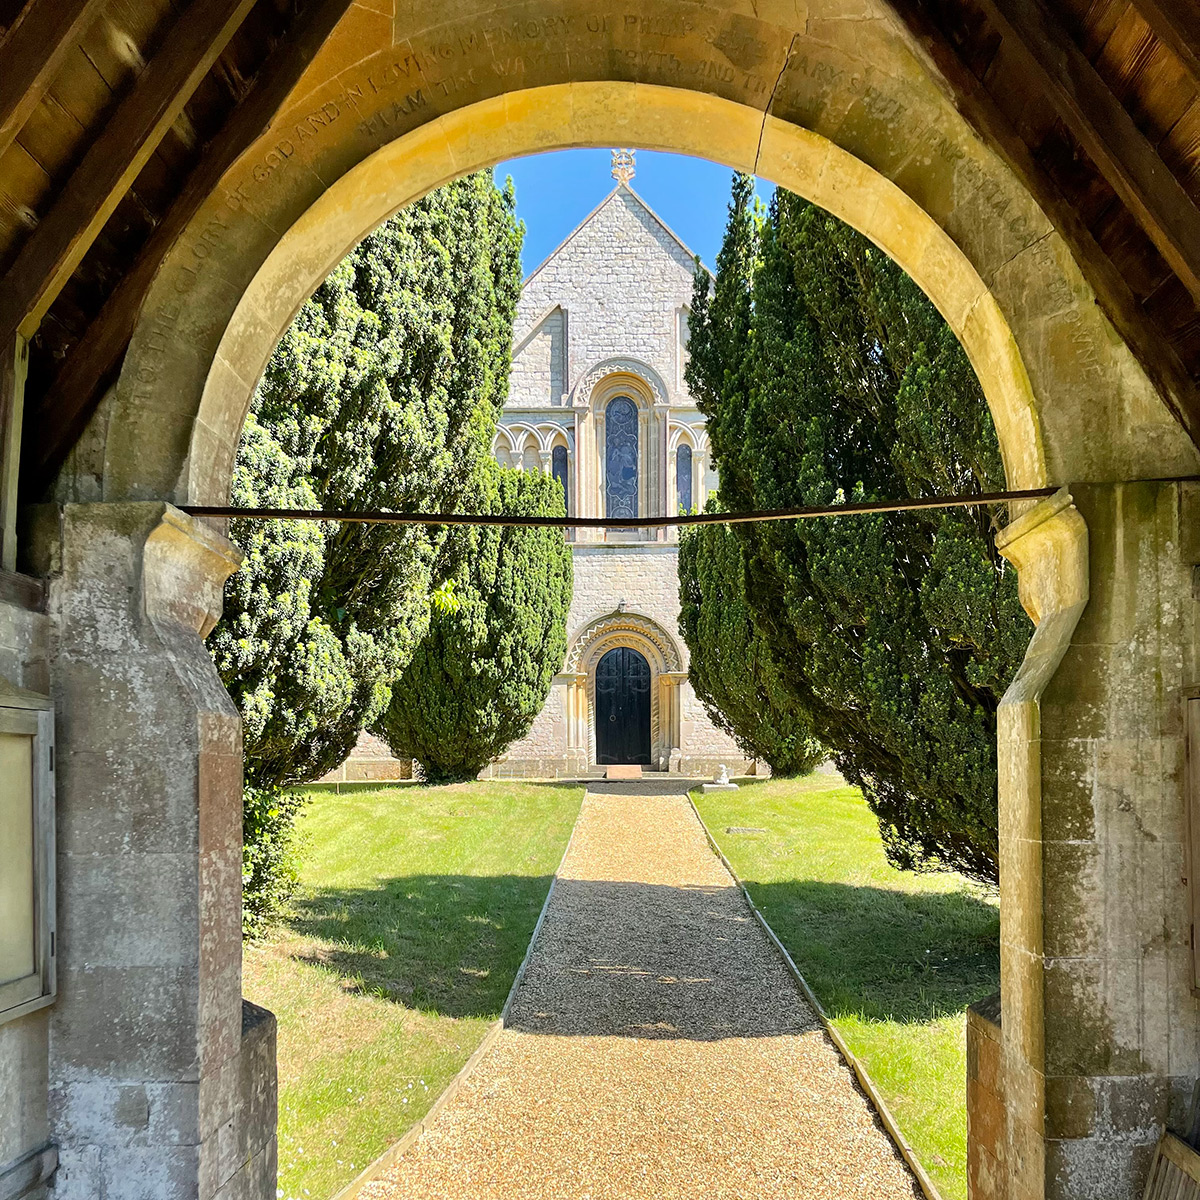 St Nicholas Church through the arch